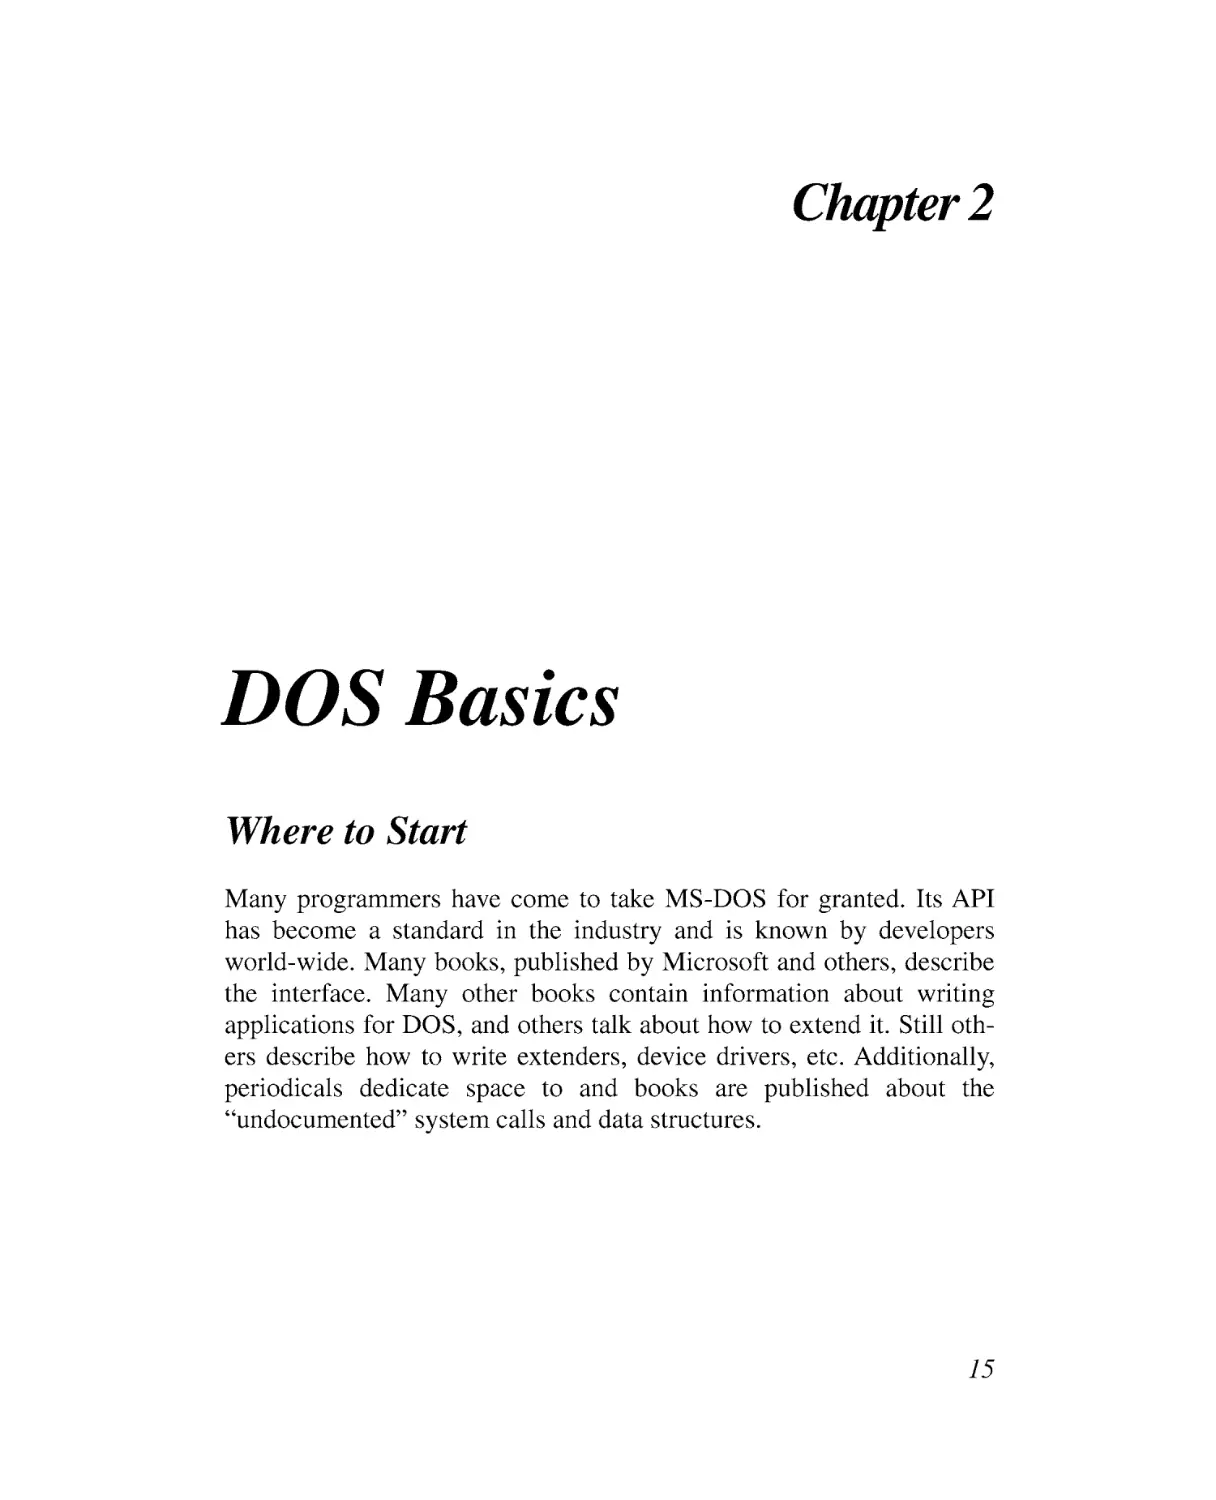 Chapter 2 DOS Basics
Where to Start